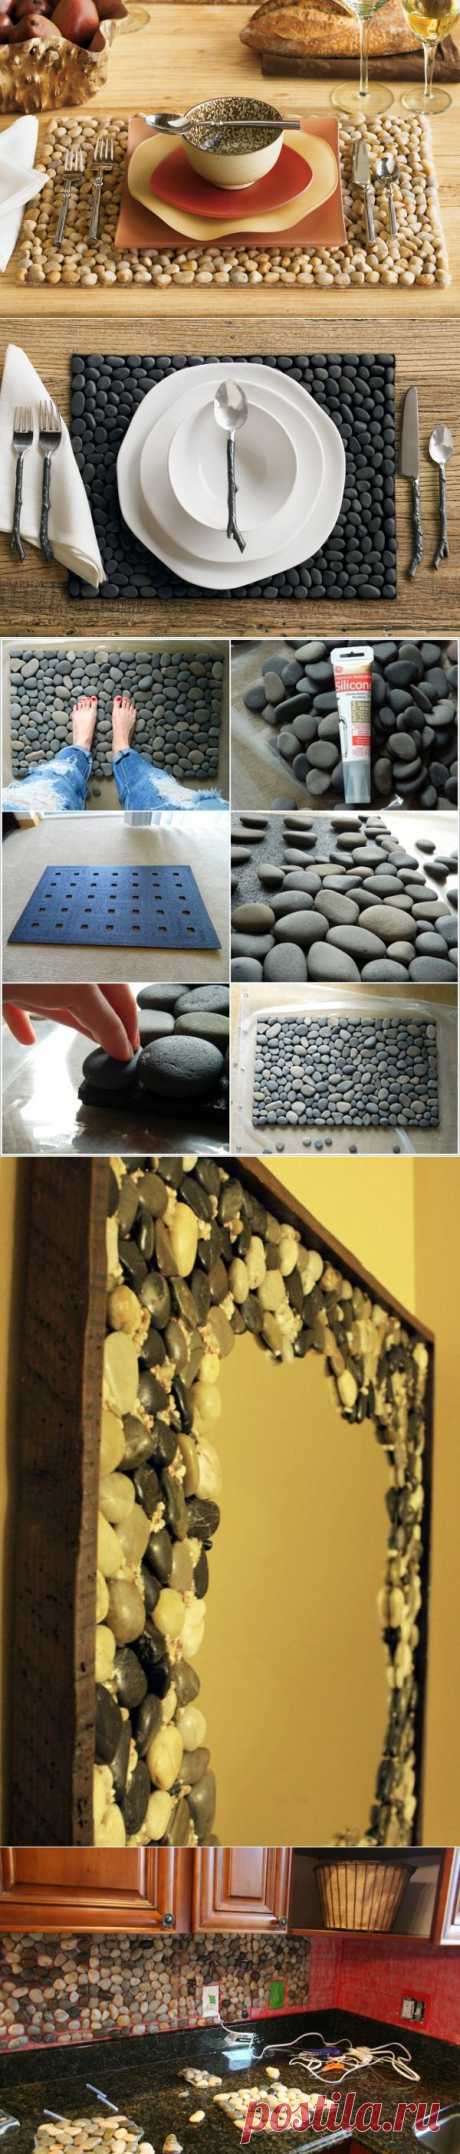 Как использовать речной камень, поделки из камней